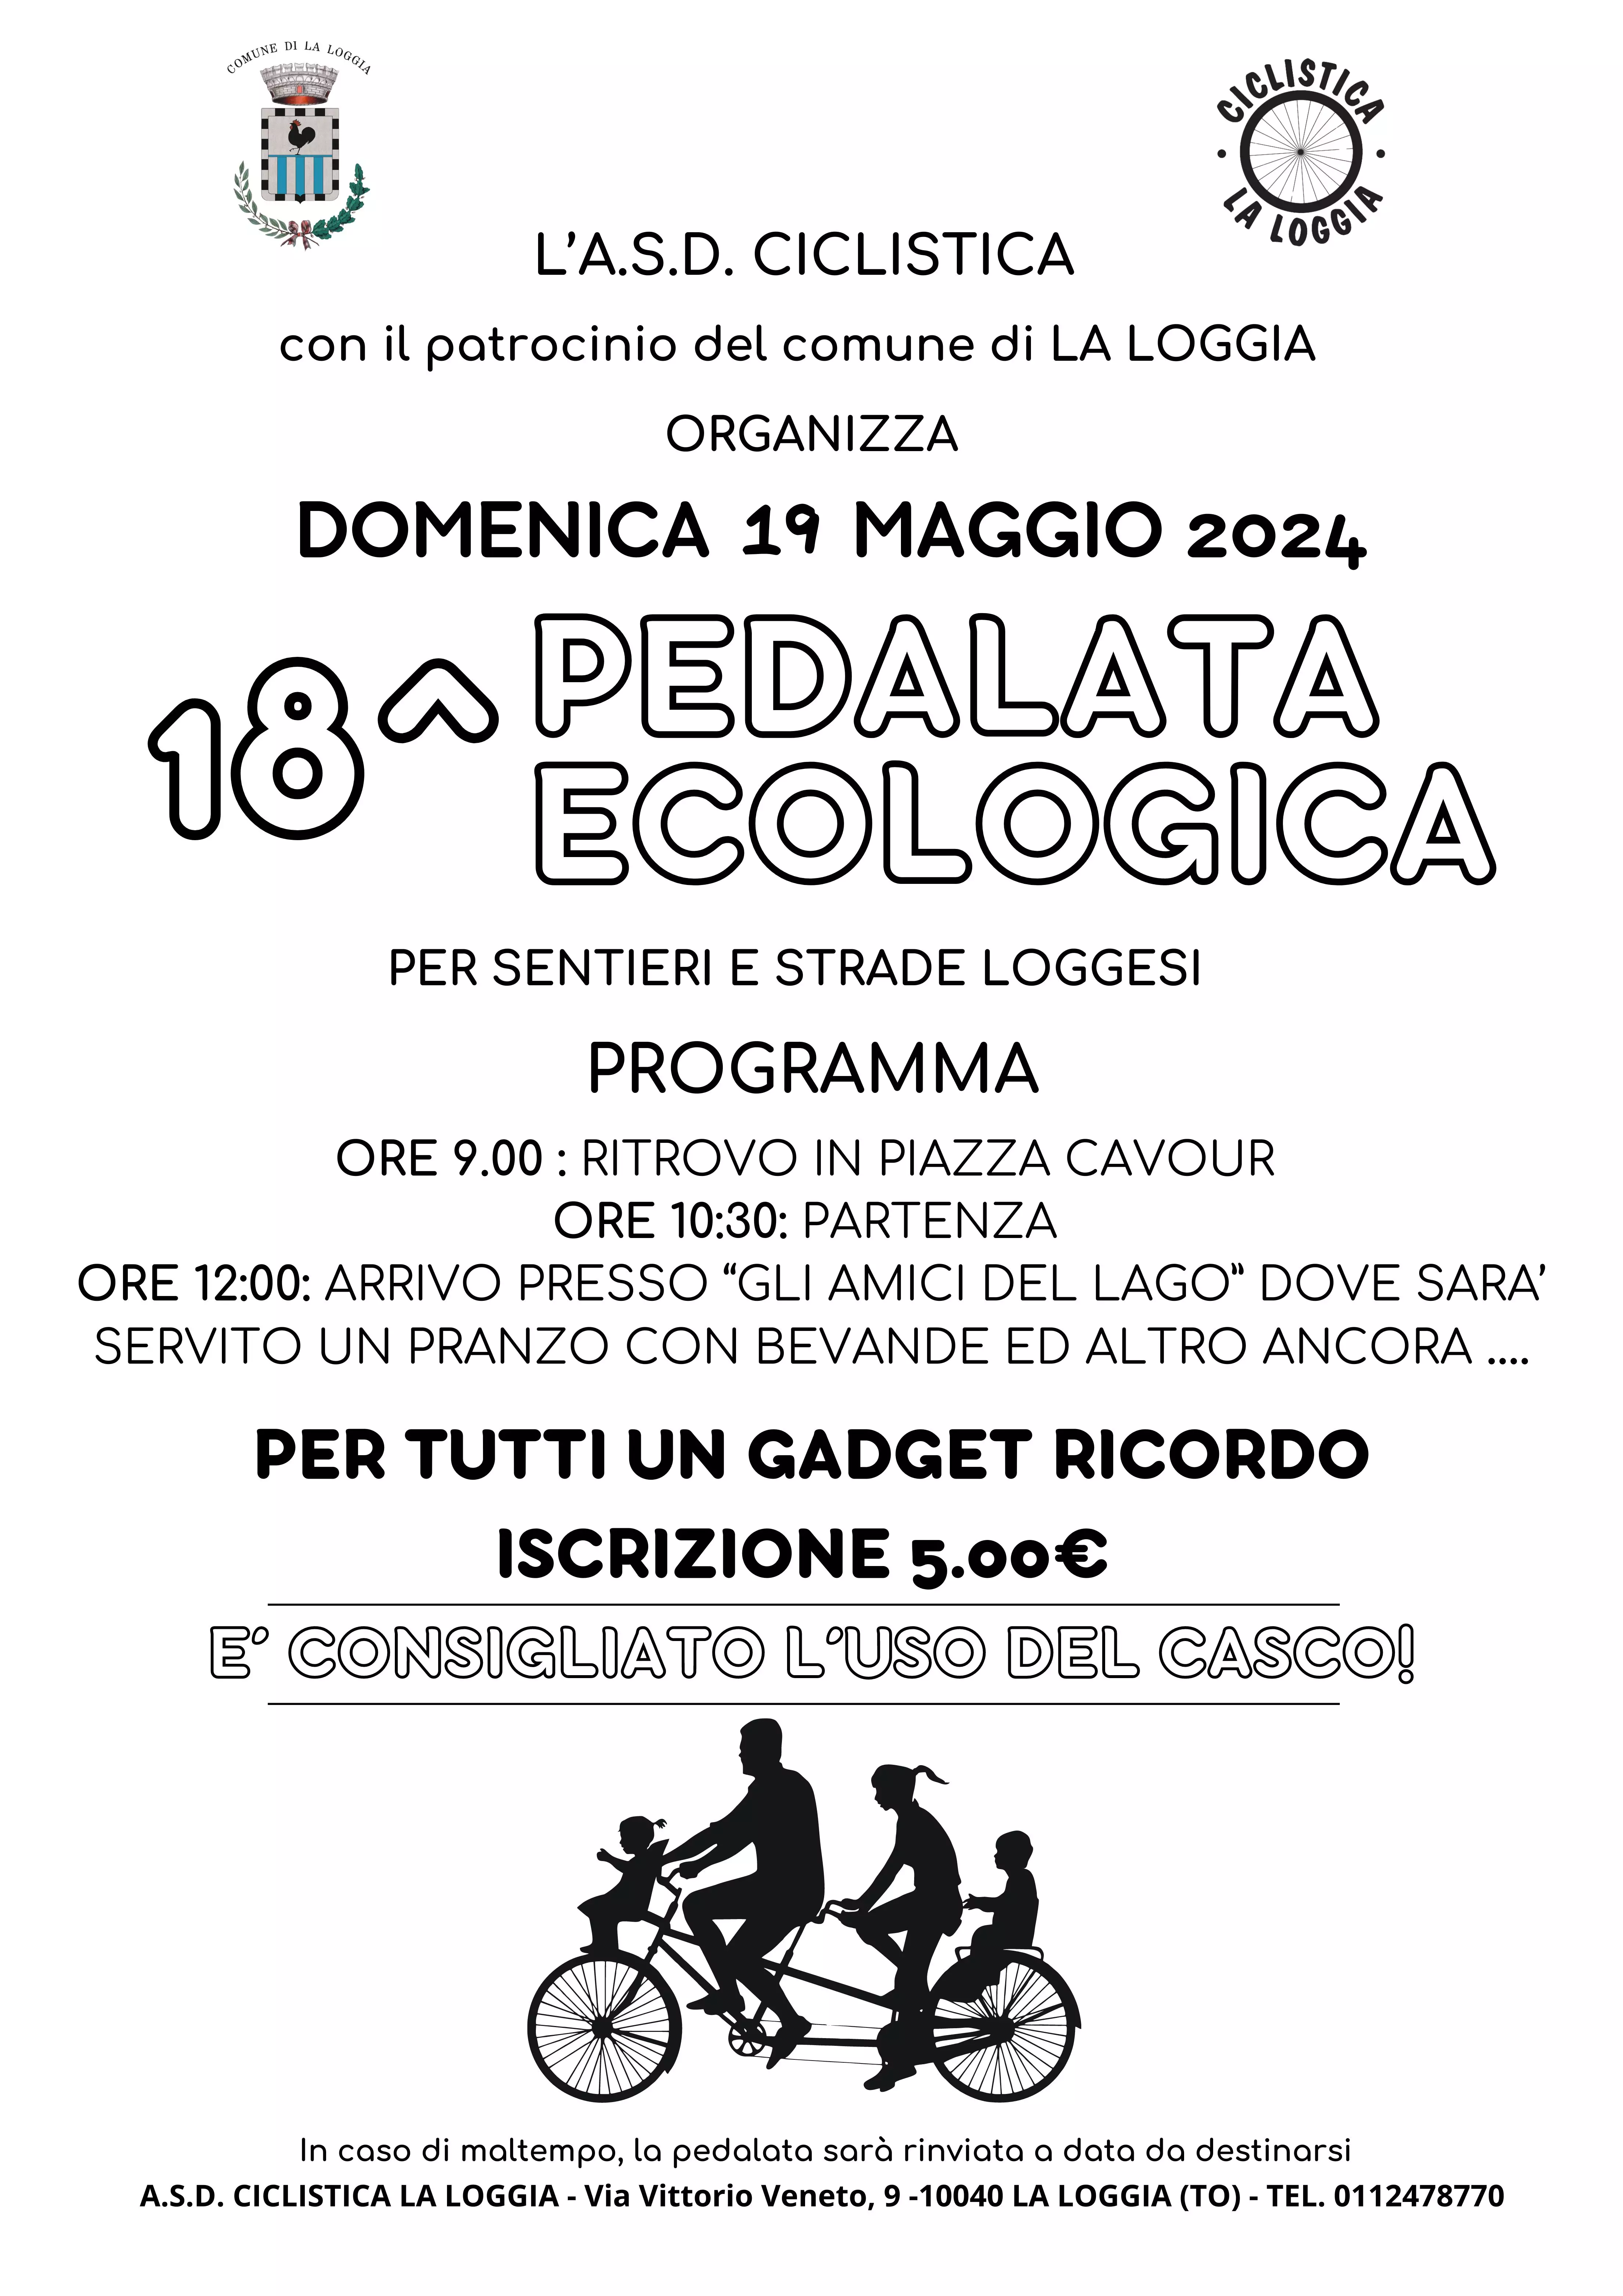 18^ Pedalata Ecologica